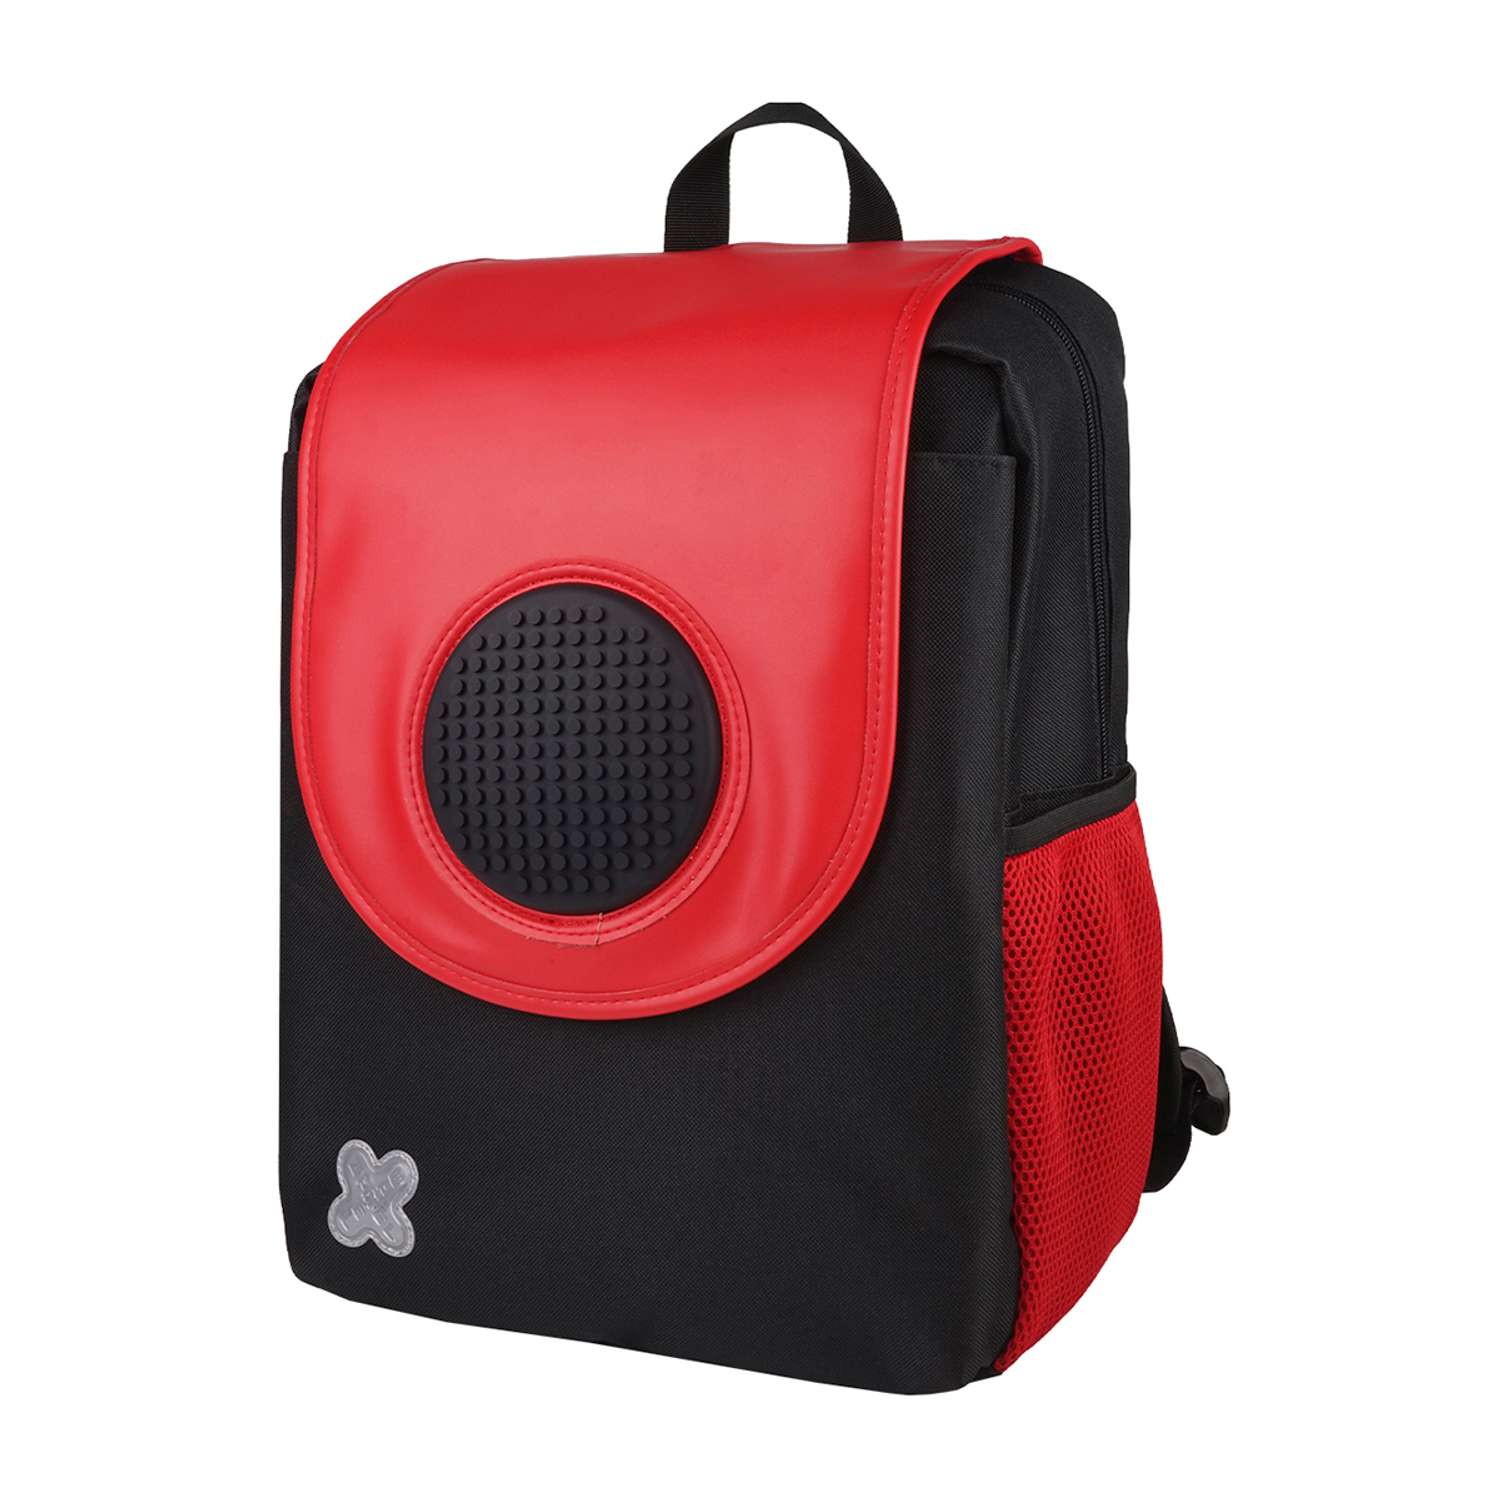 Рюкзак пиксельный Upixel futuristic Kids School Bag чёрно-красный облегченный - фото 1